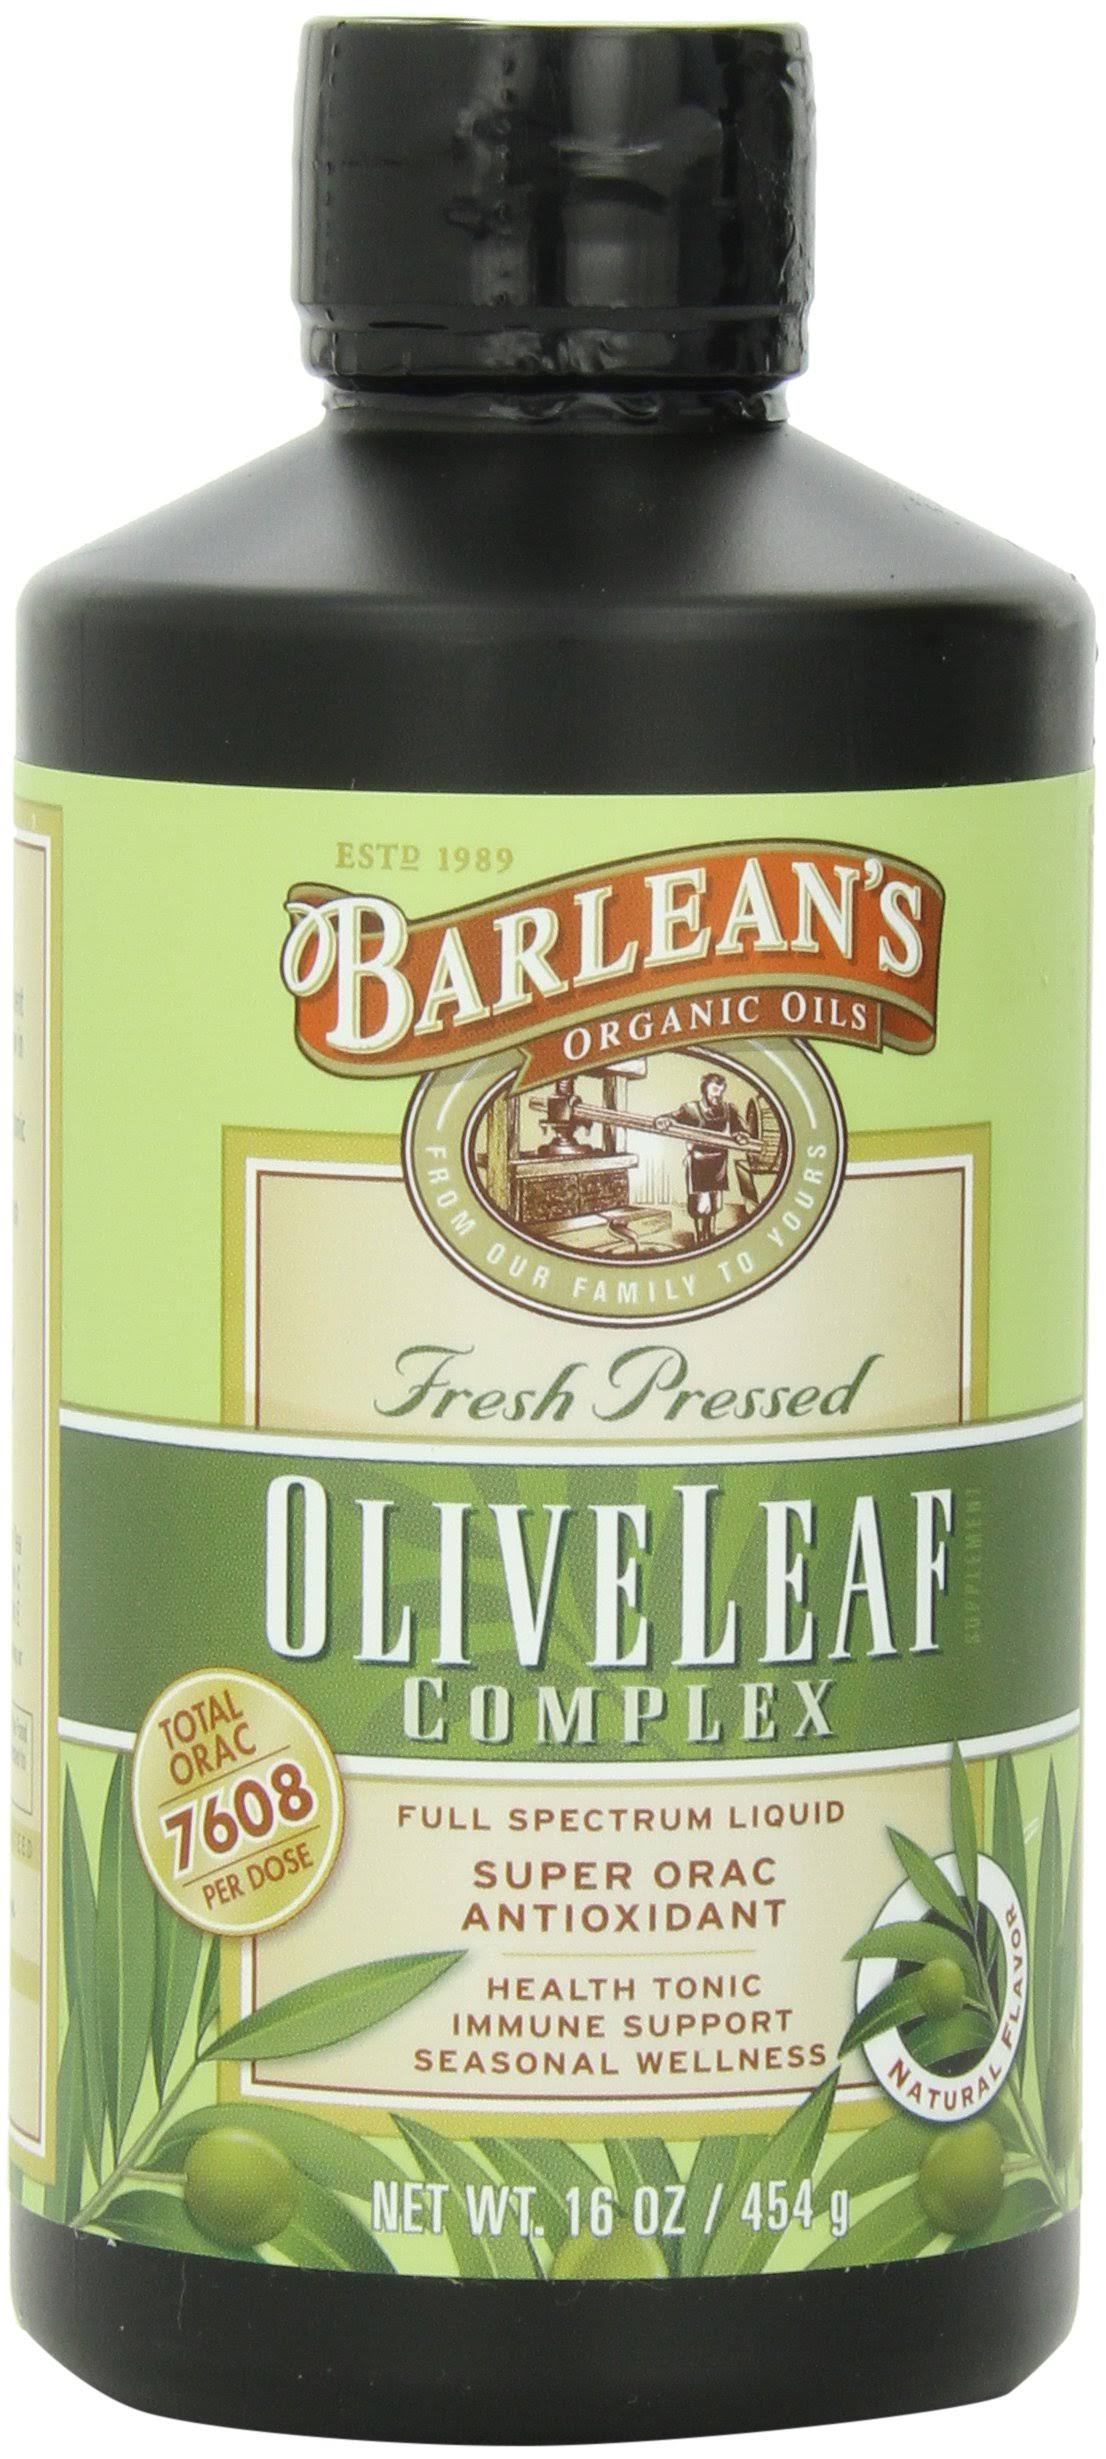 Barlean's Olive Leaf Complex Health Tonic Immune Support - Natural Flavor, 454g